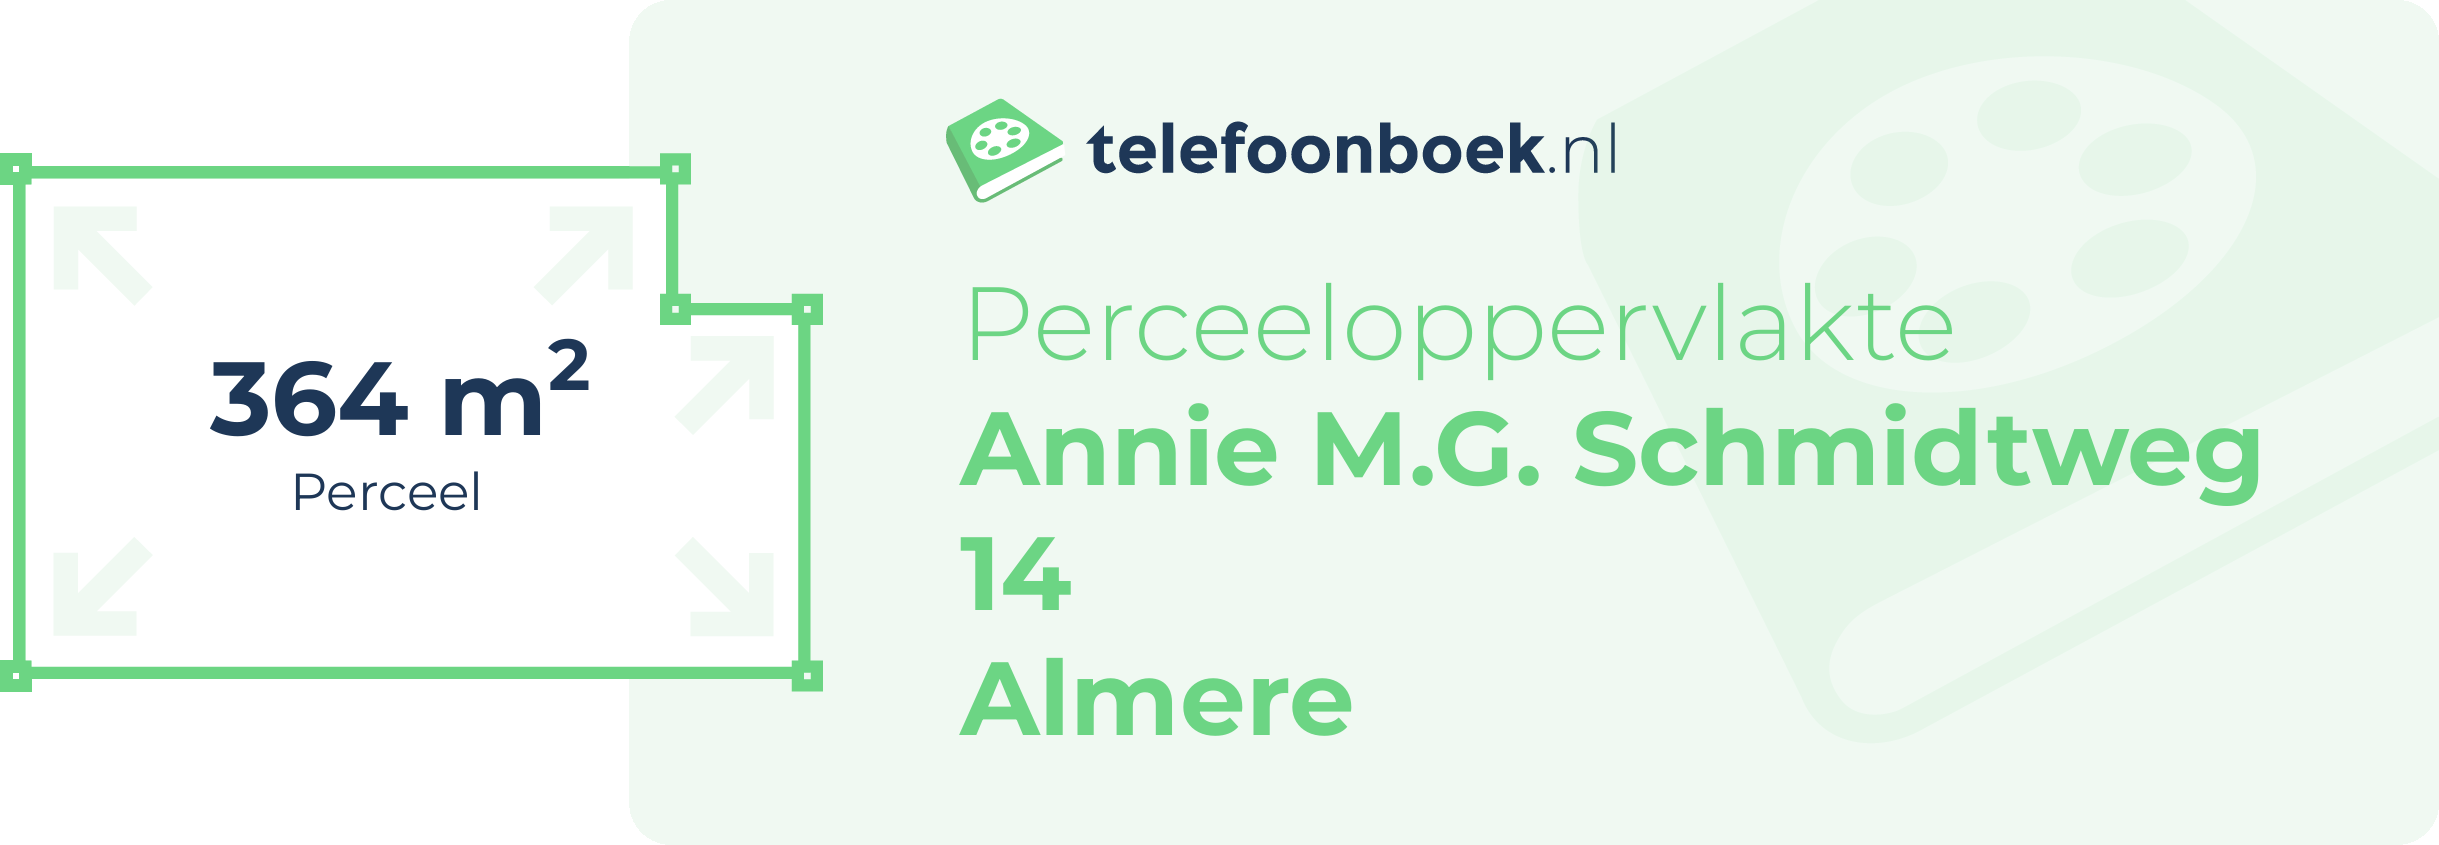 Perceeloppervlakte Annie M.G. Schmidtweg 14 Almere